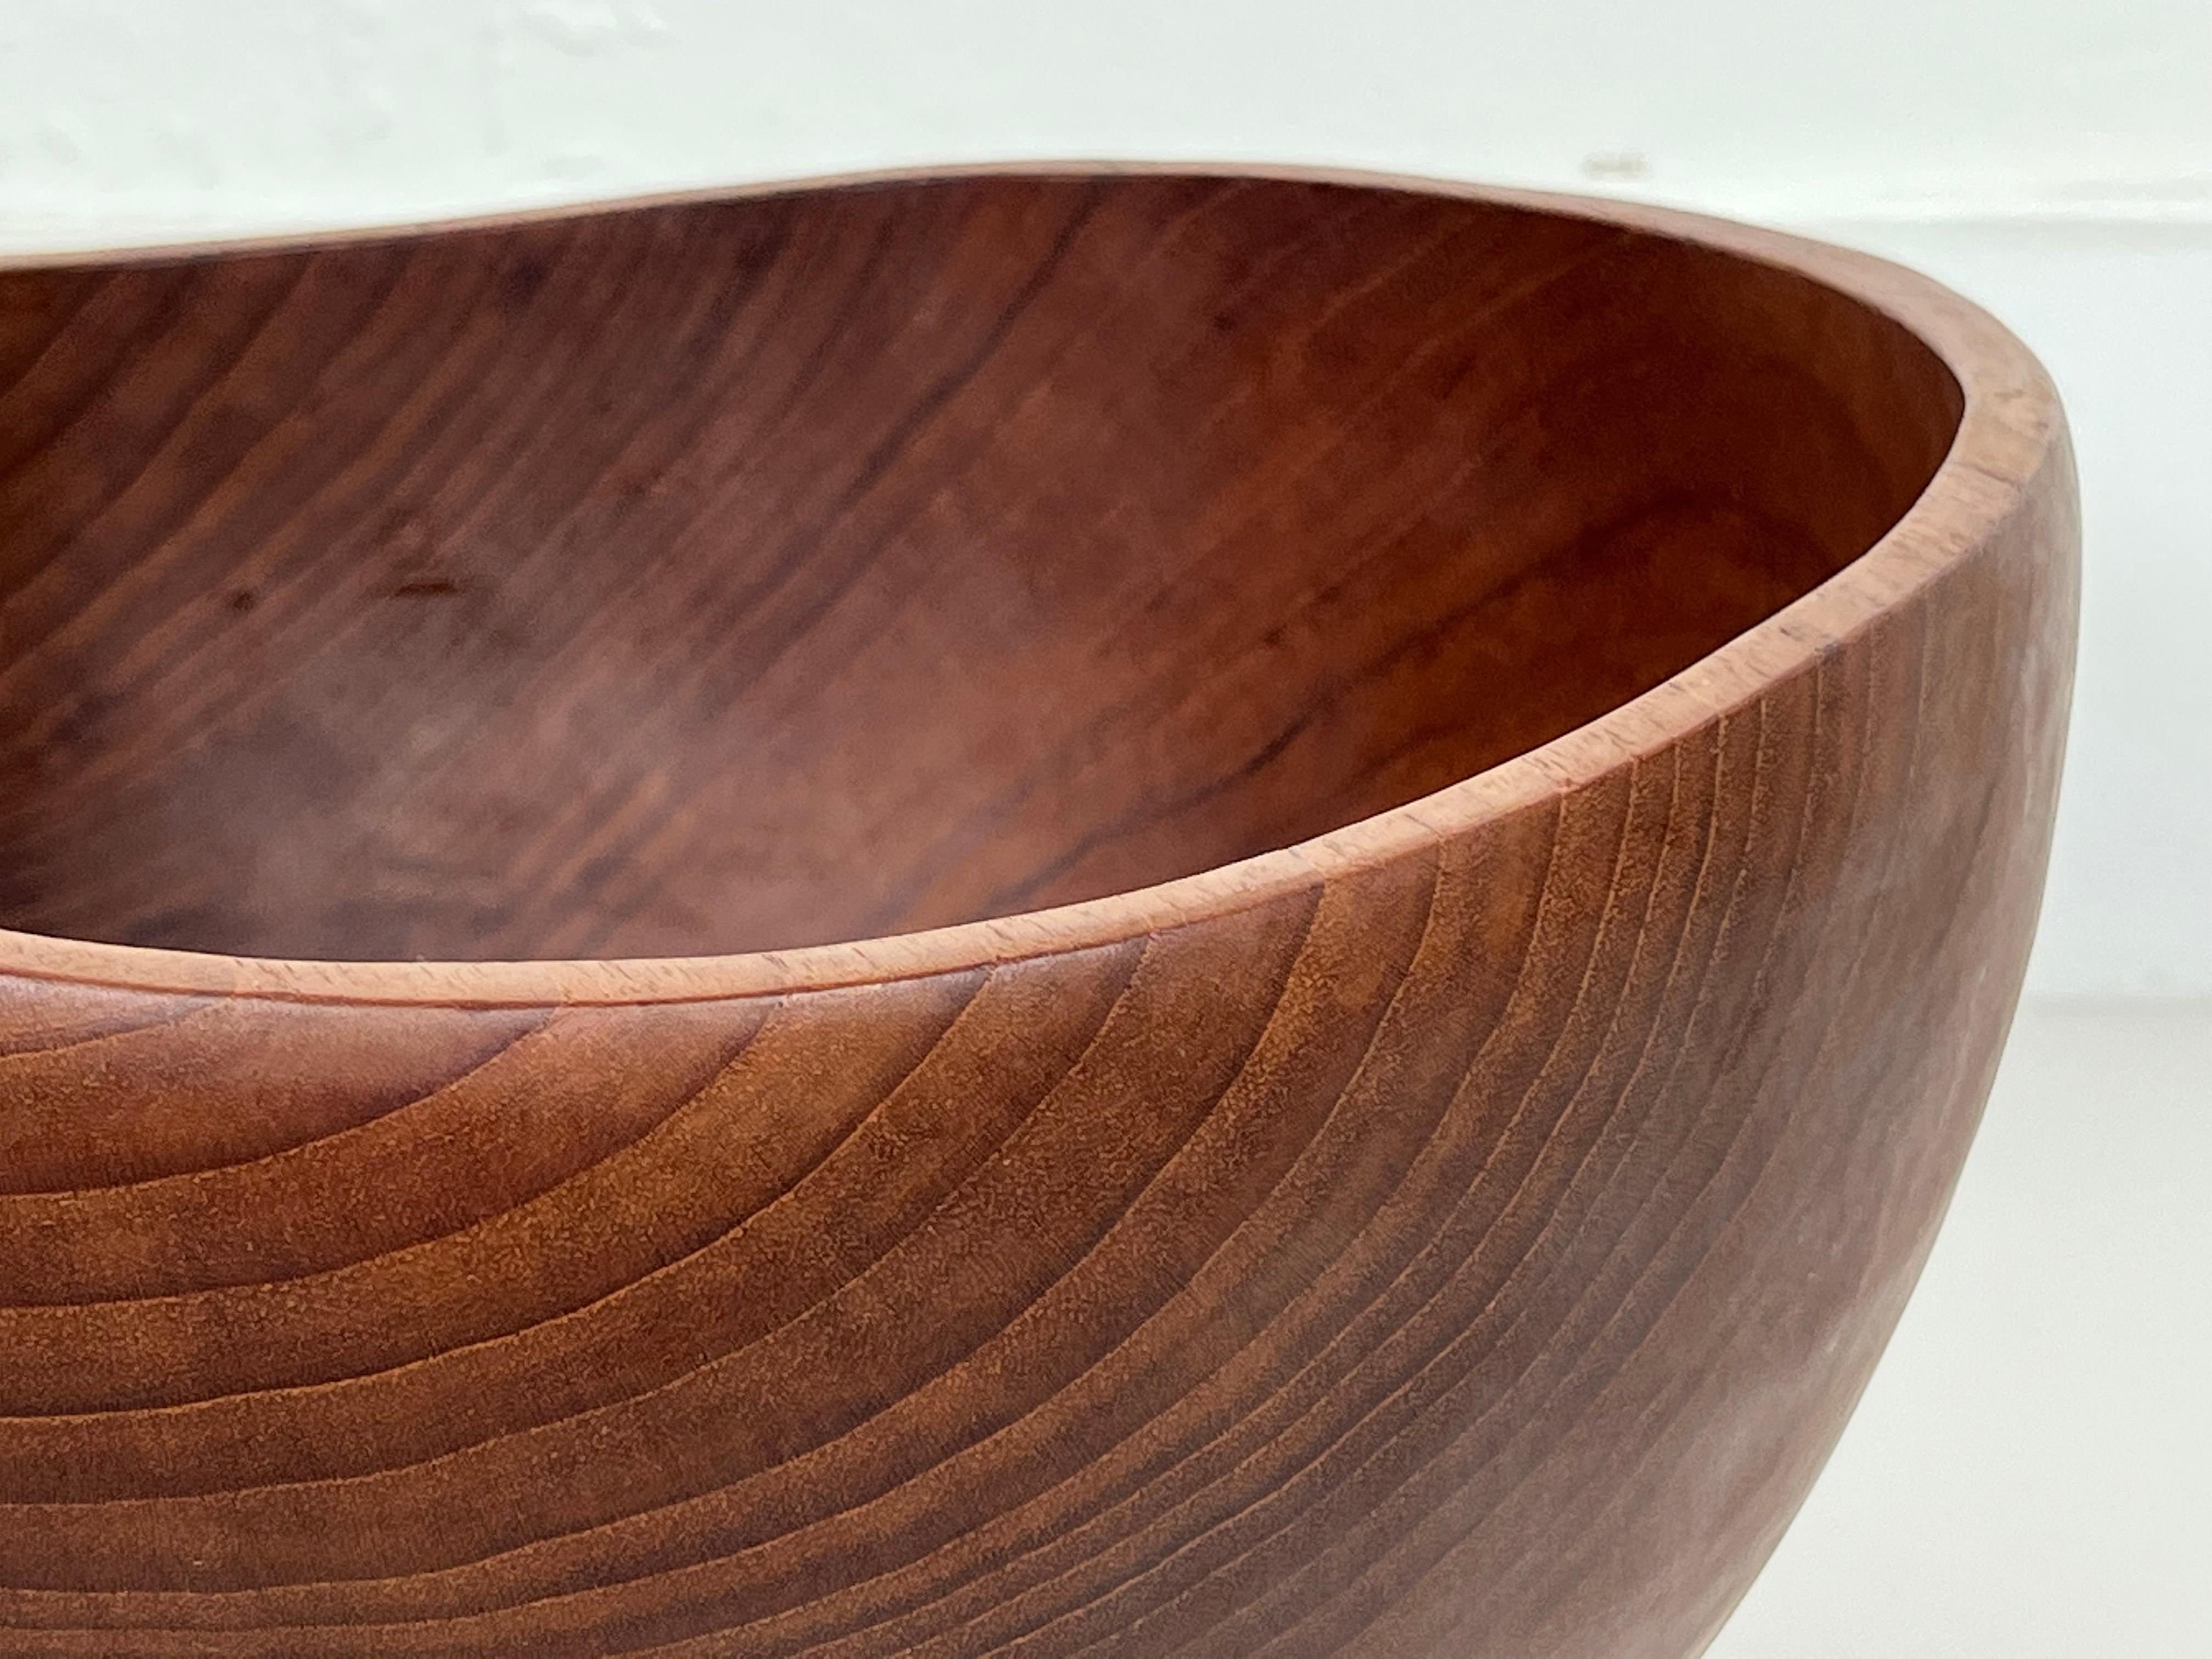 Danish Large Vintage Teak Wood Bowl